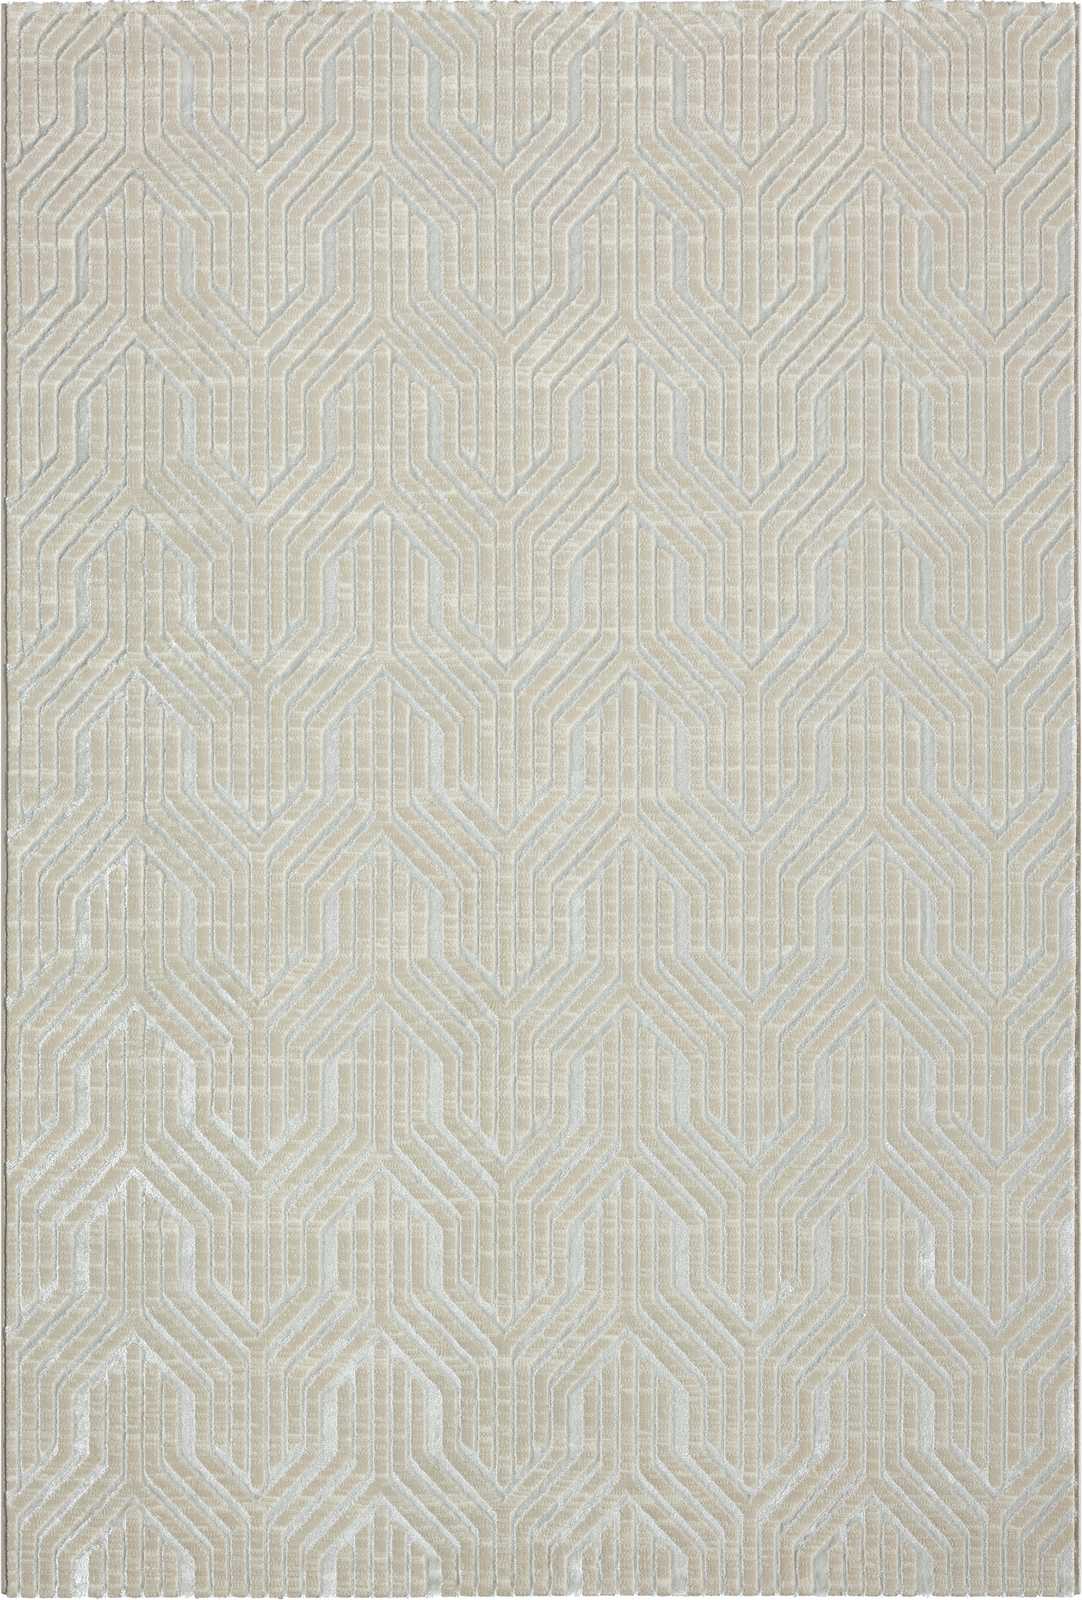             Zachtpolig tapijt in crème - 200 x 140 cm
        